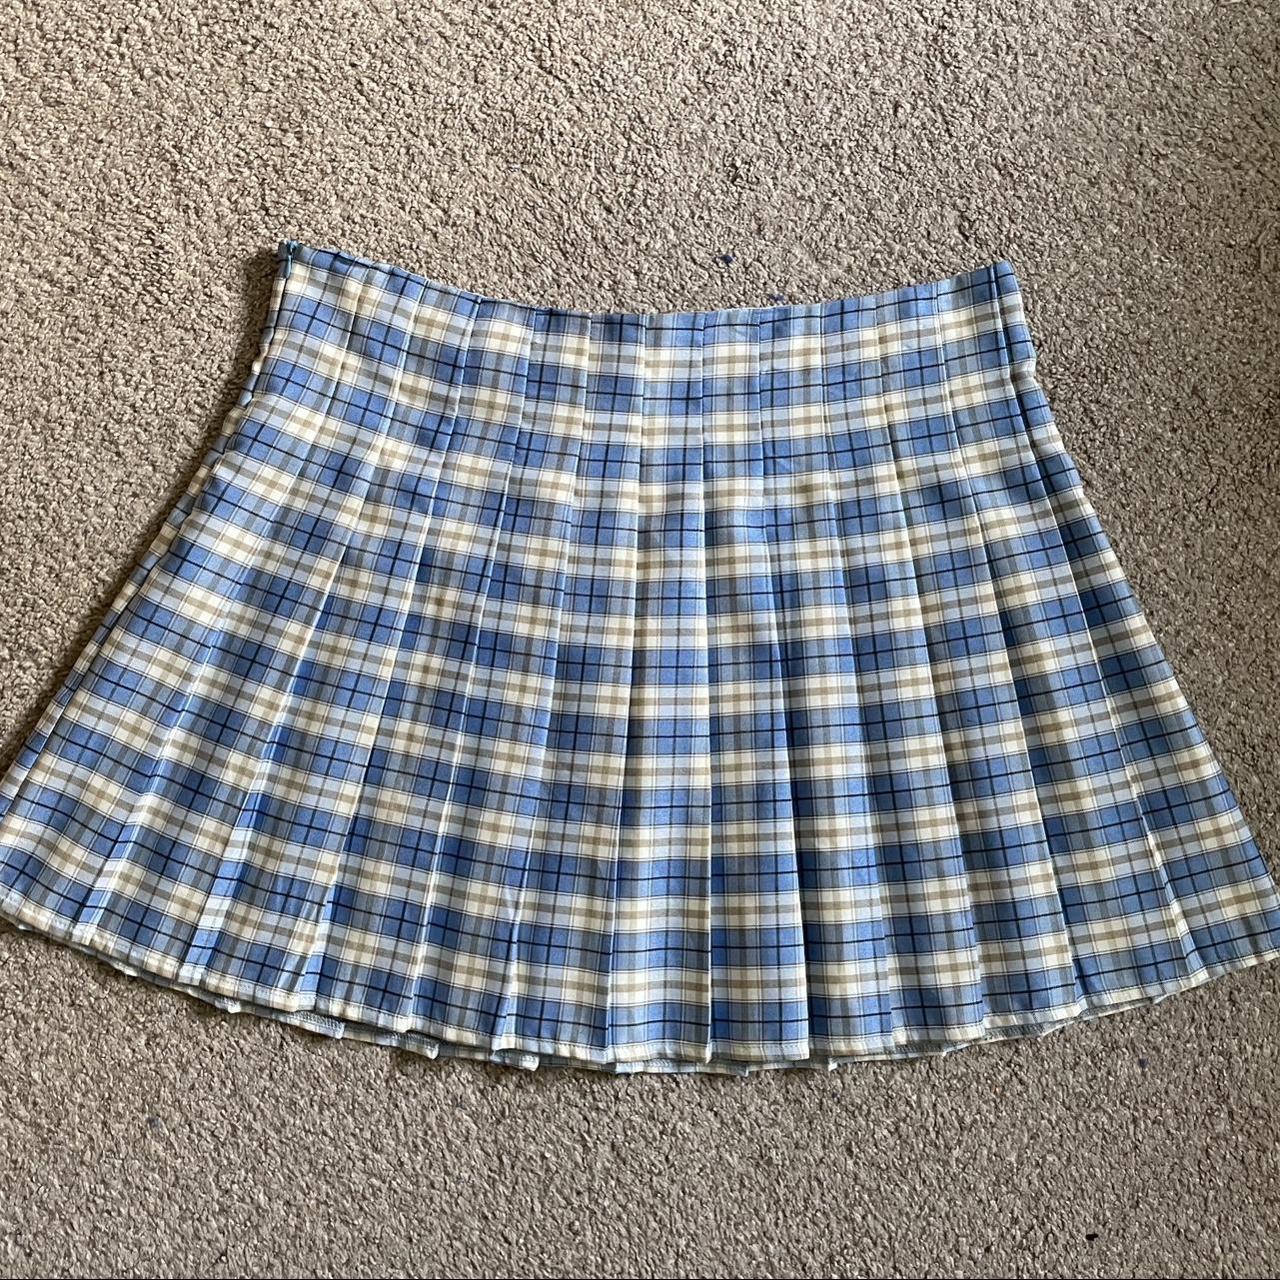 y2k blue plaid pleated miniskirt. It hits ~4